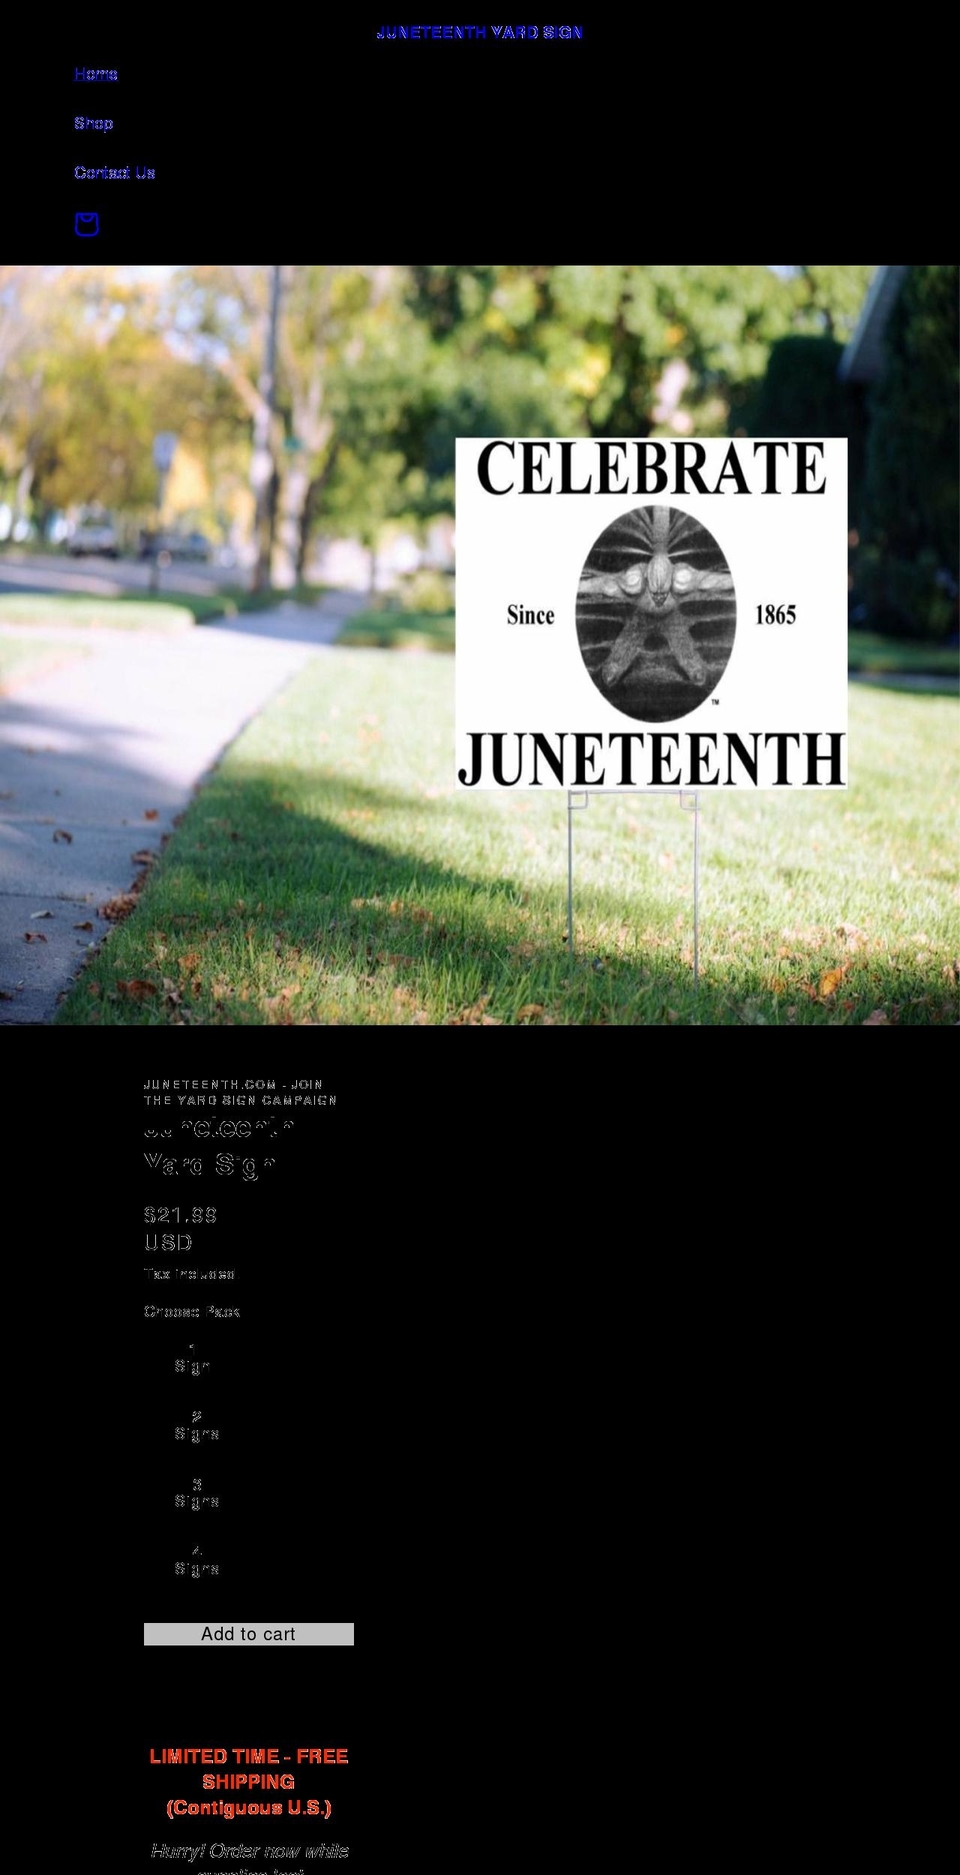 juneteenthyardsign.com shopify website screenshot